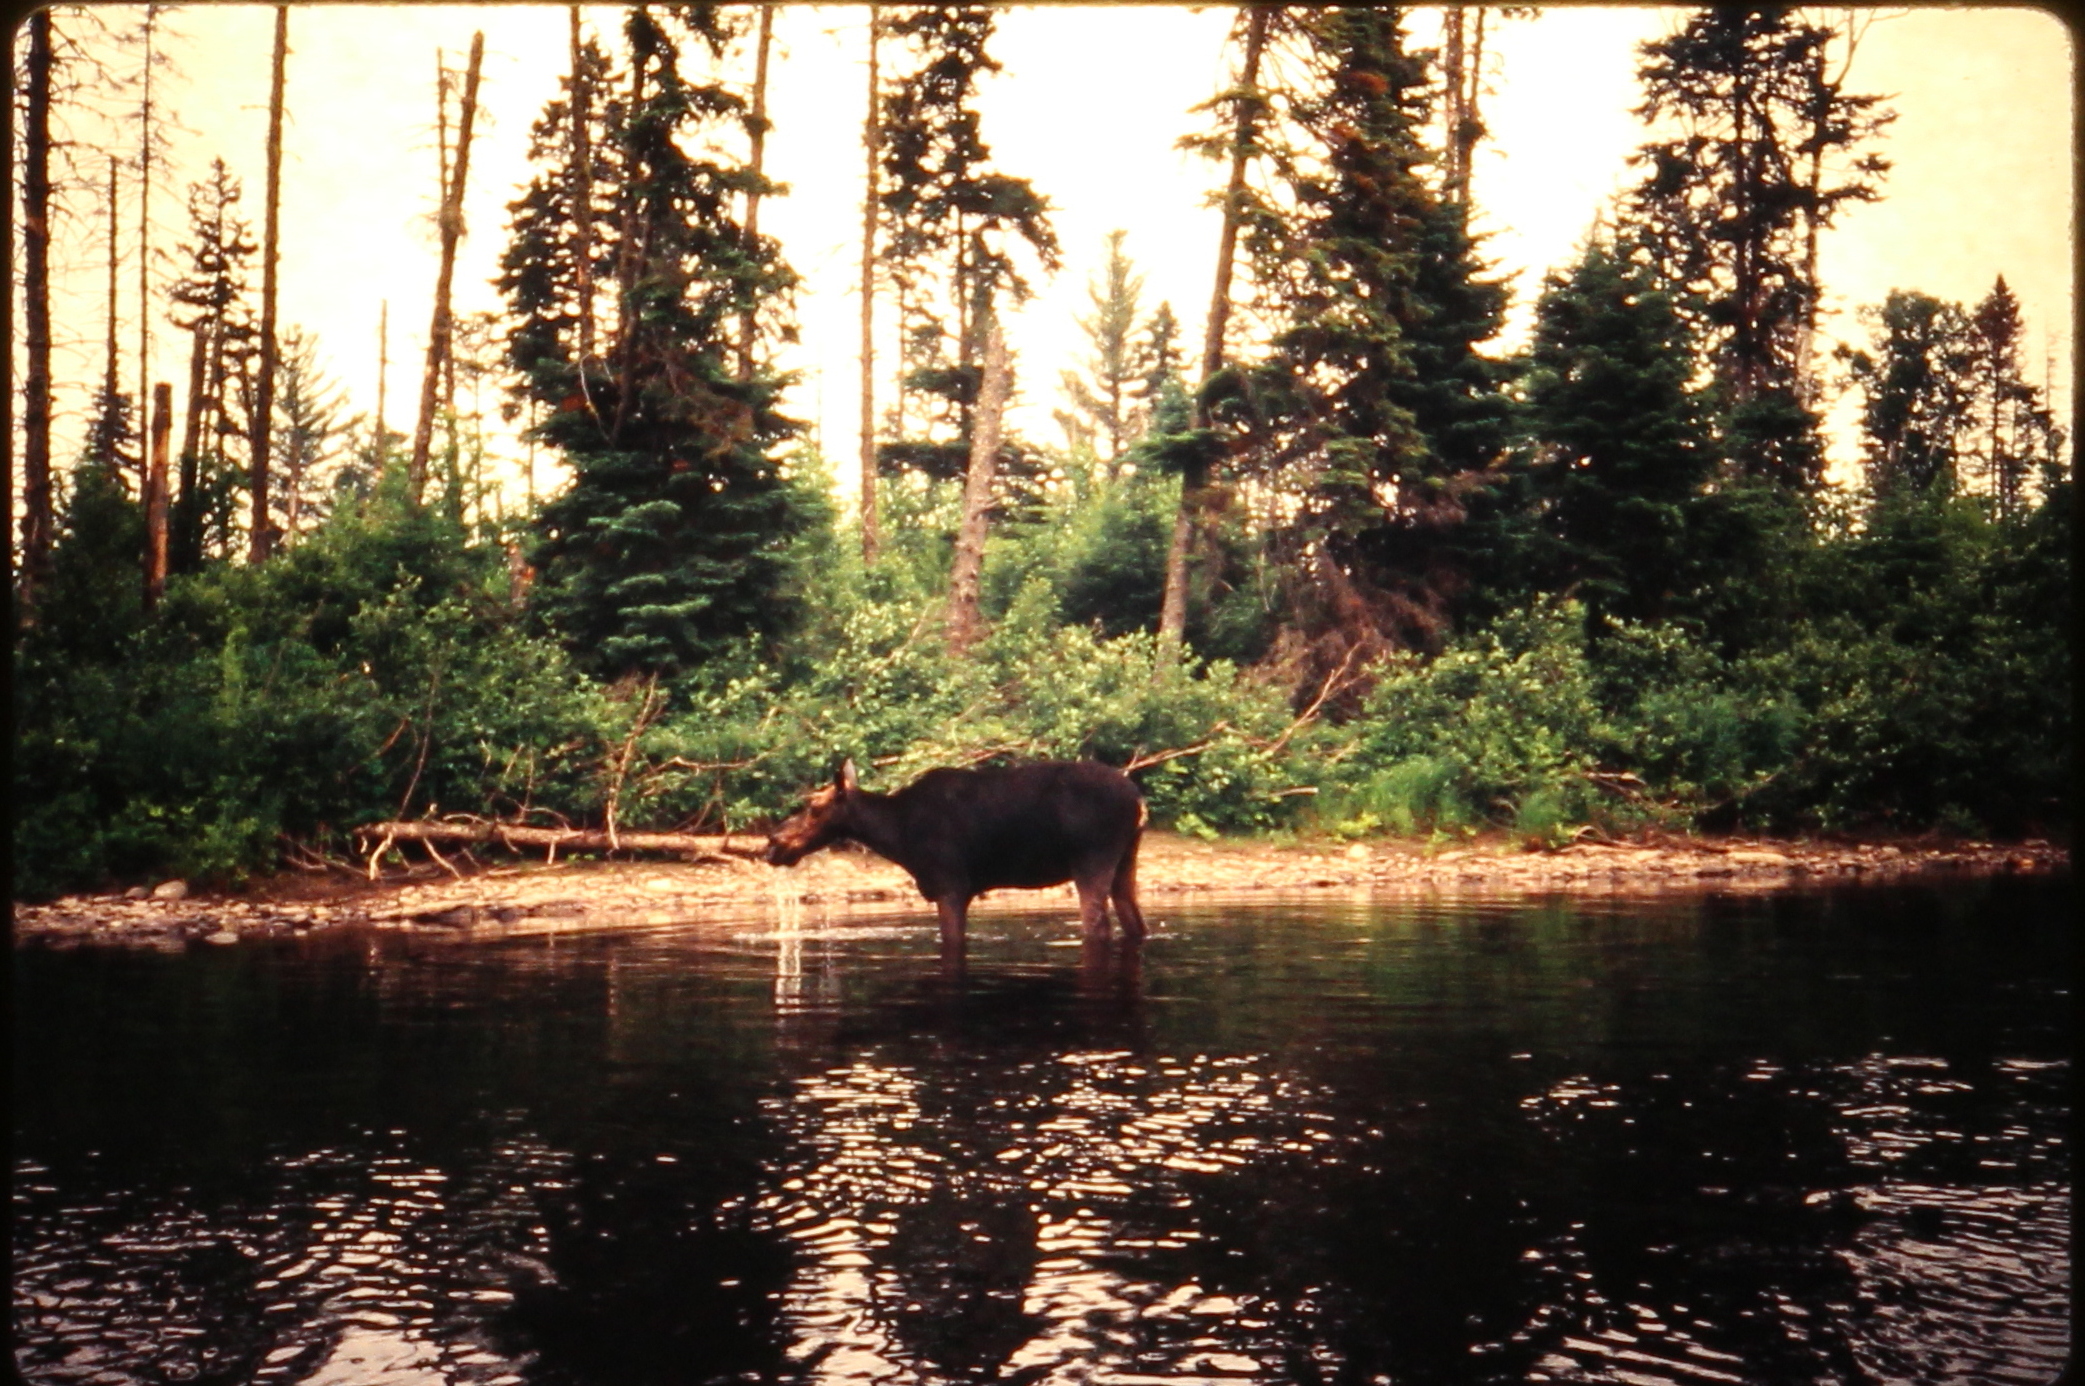 19890900.12 - USA ME xx xx PRiver - xx - Paddling Past Moose on the River - MB01T01B09S12.JPG